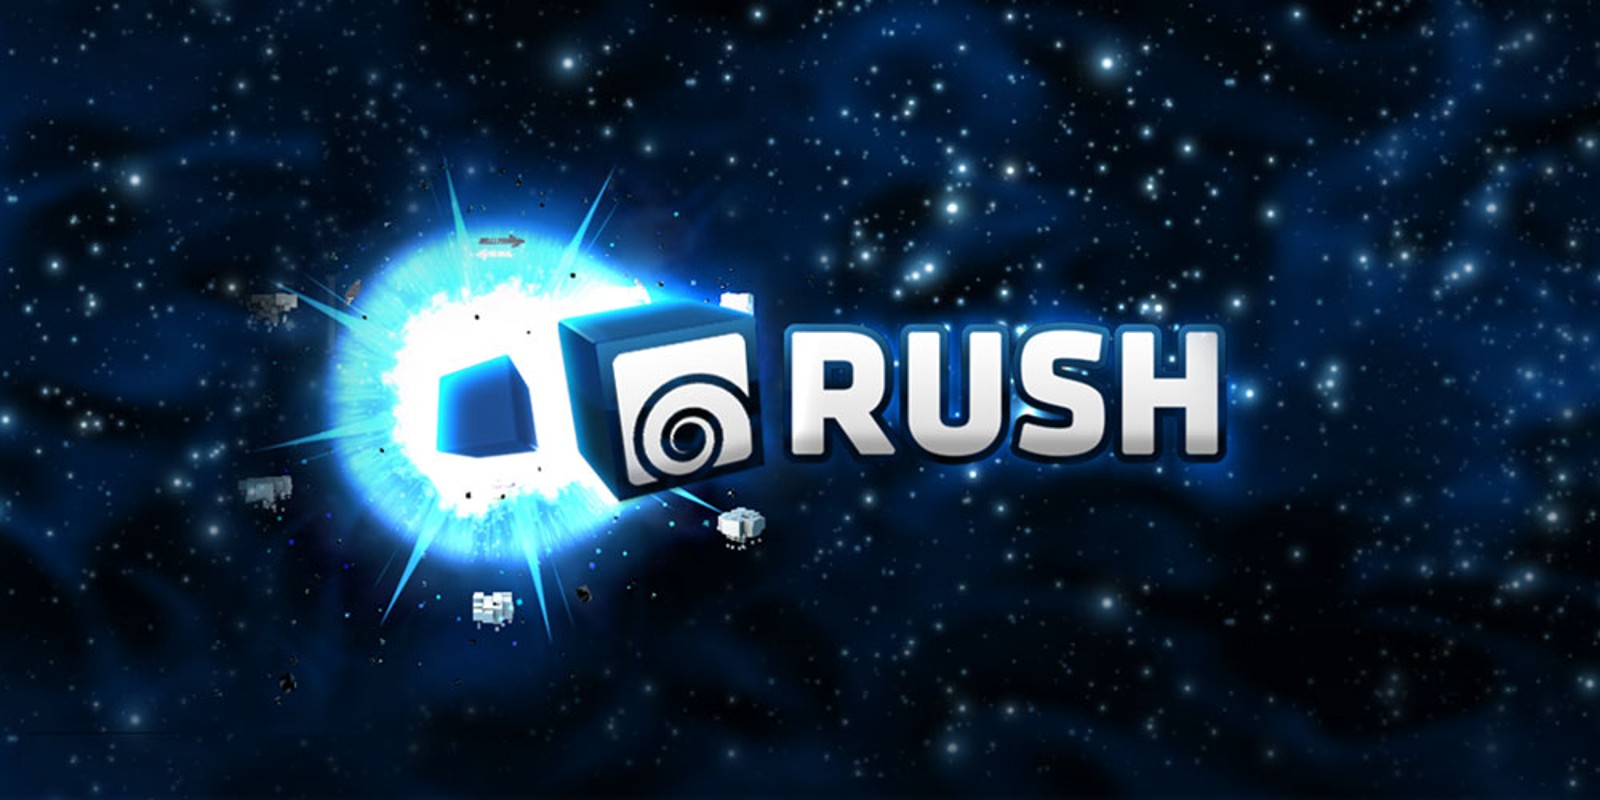 download rush e game